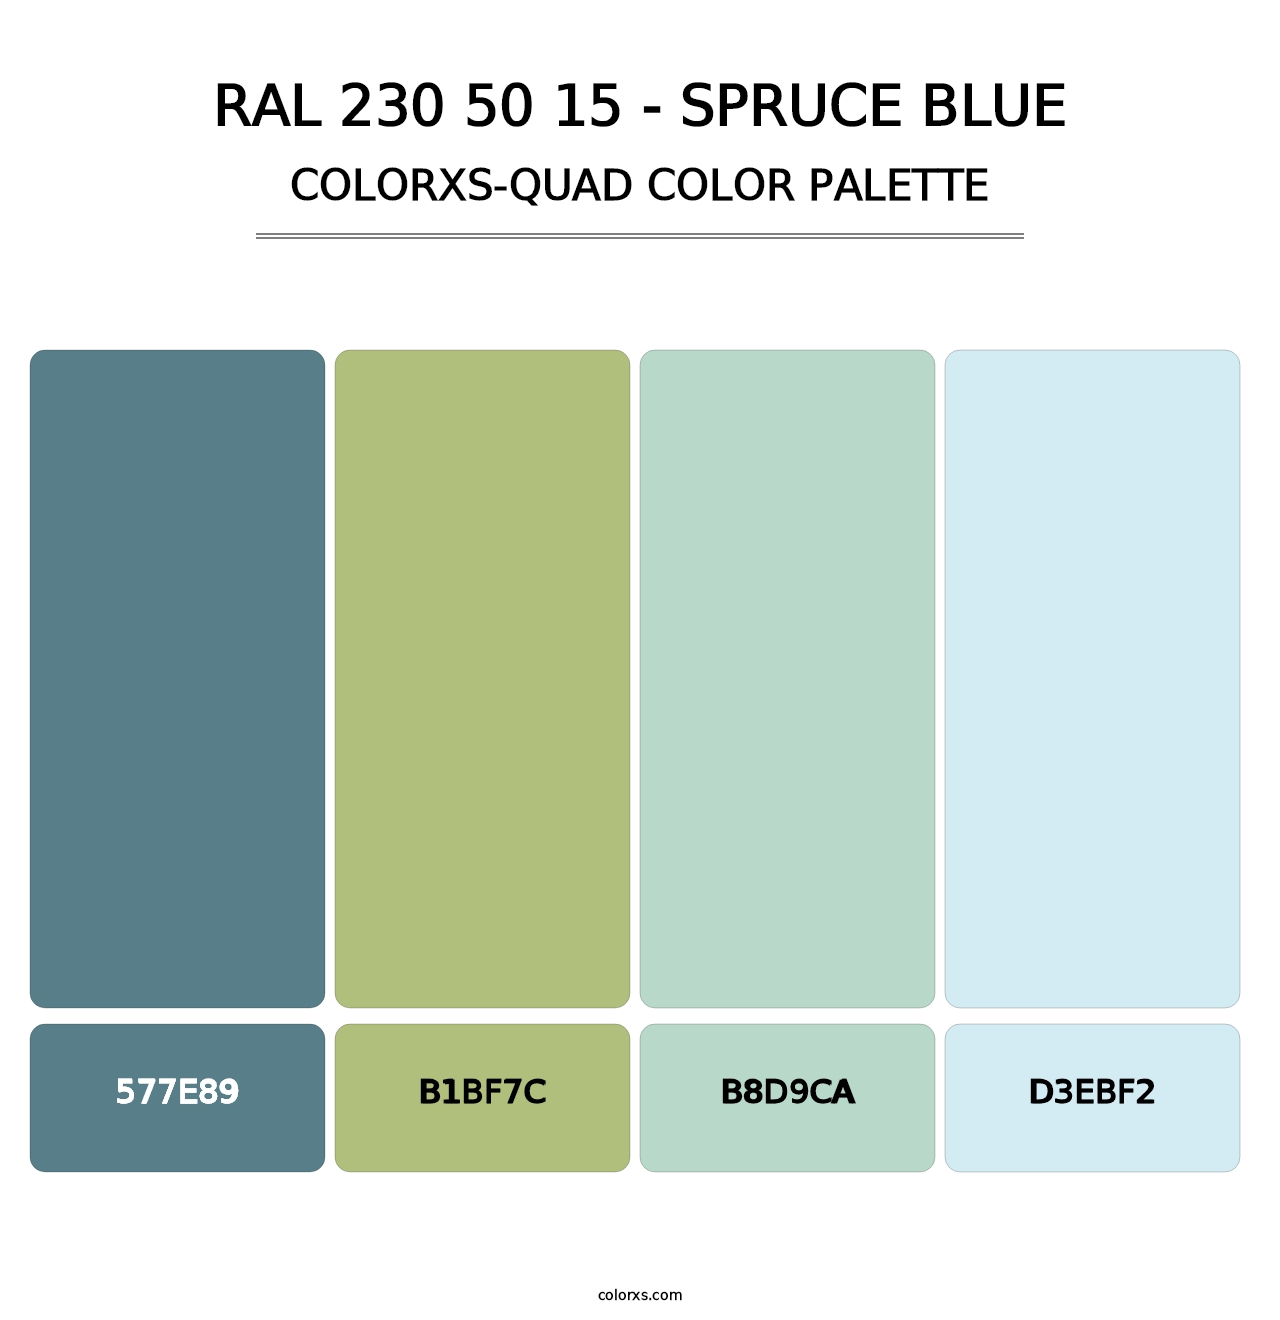 RAL 230 50 15 - Spruce Blue - Colorxs Quad Palette